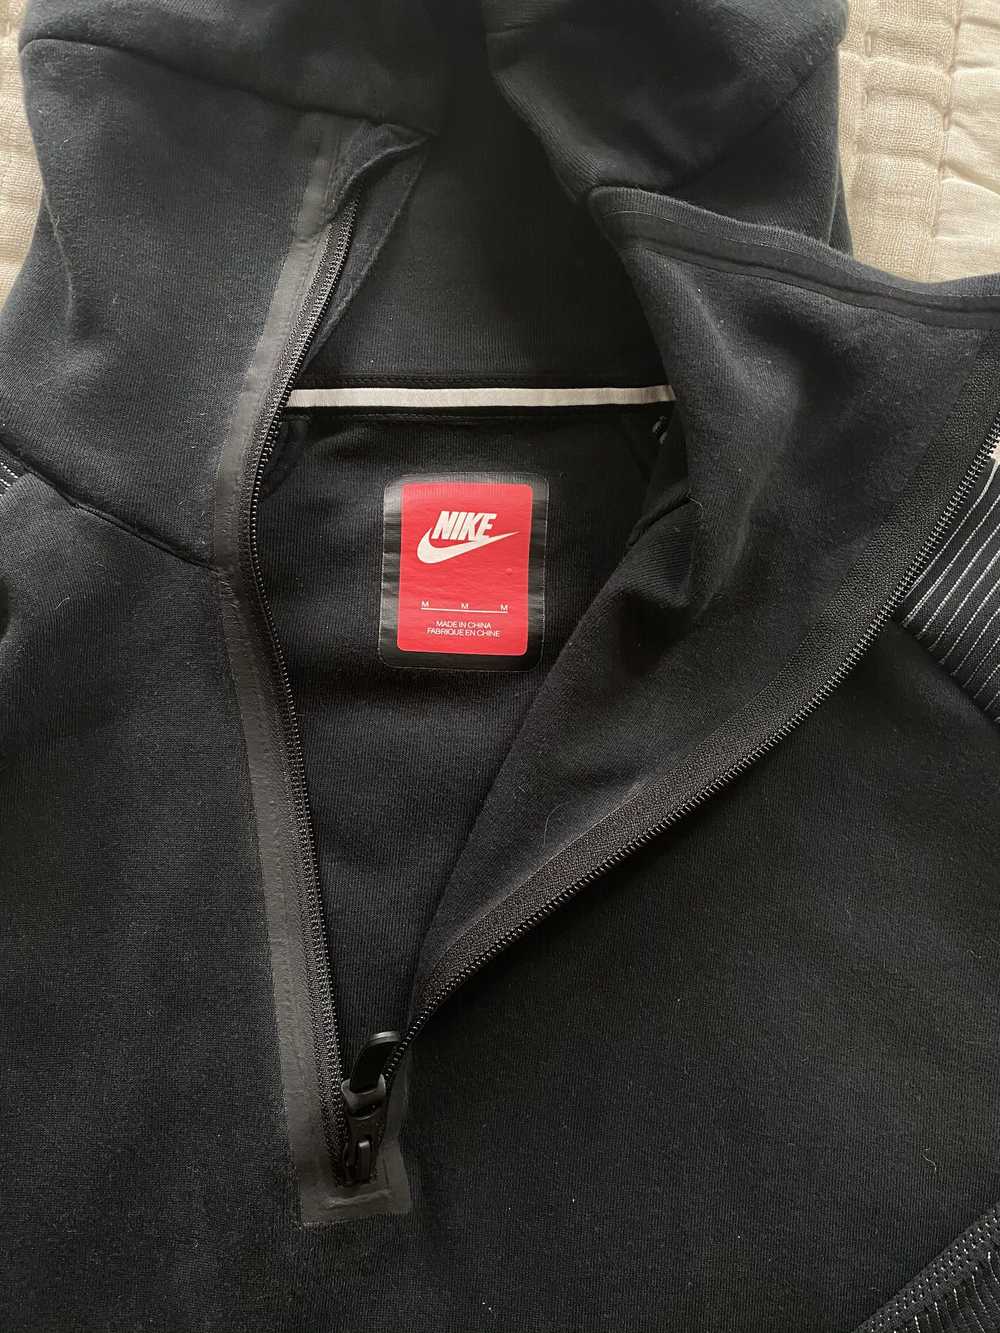 Nike Nike sweatshirt - image 3